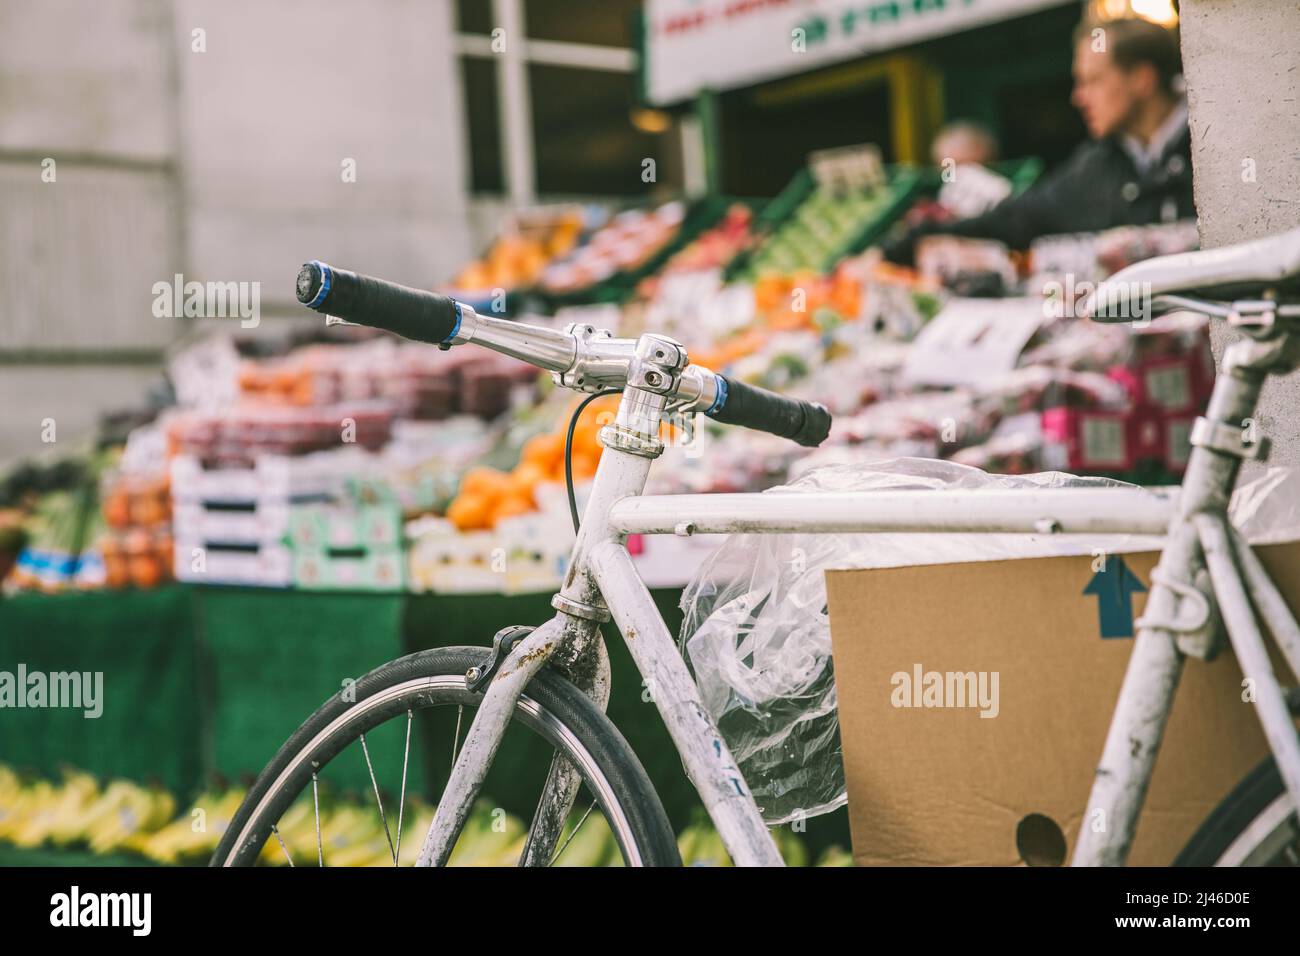 Greater London, London, UK - 12 aprile 2016: Una bicicletta può essere visto in primo piano di questa immagine, con una bancarella di frutta e verdura sullo sfondo Foto Stock